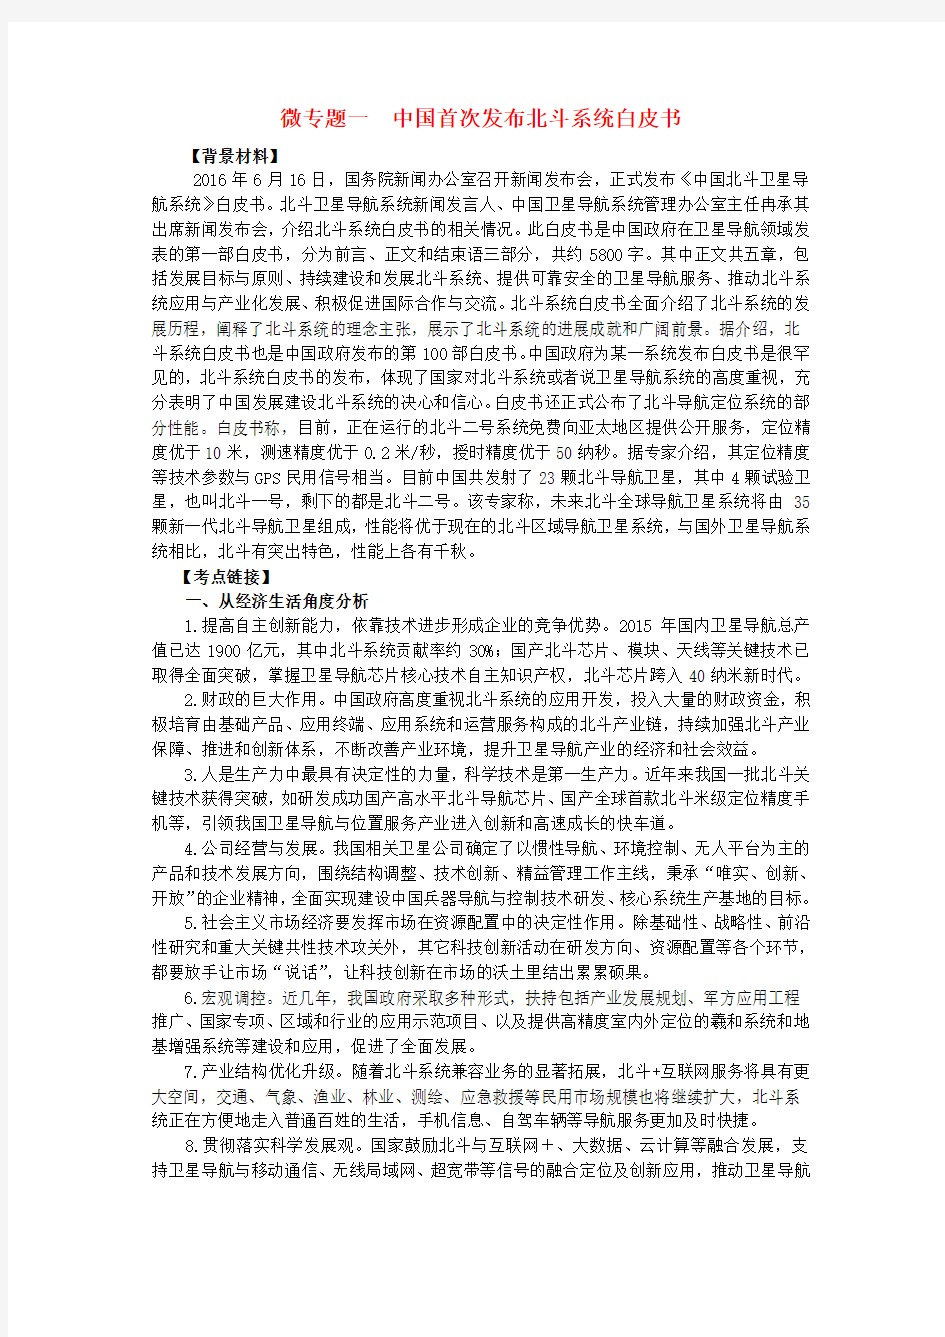 2017年高考政治 时政热点微专题(第二集)一 中国首次发布北斗系统白皮书